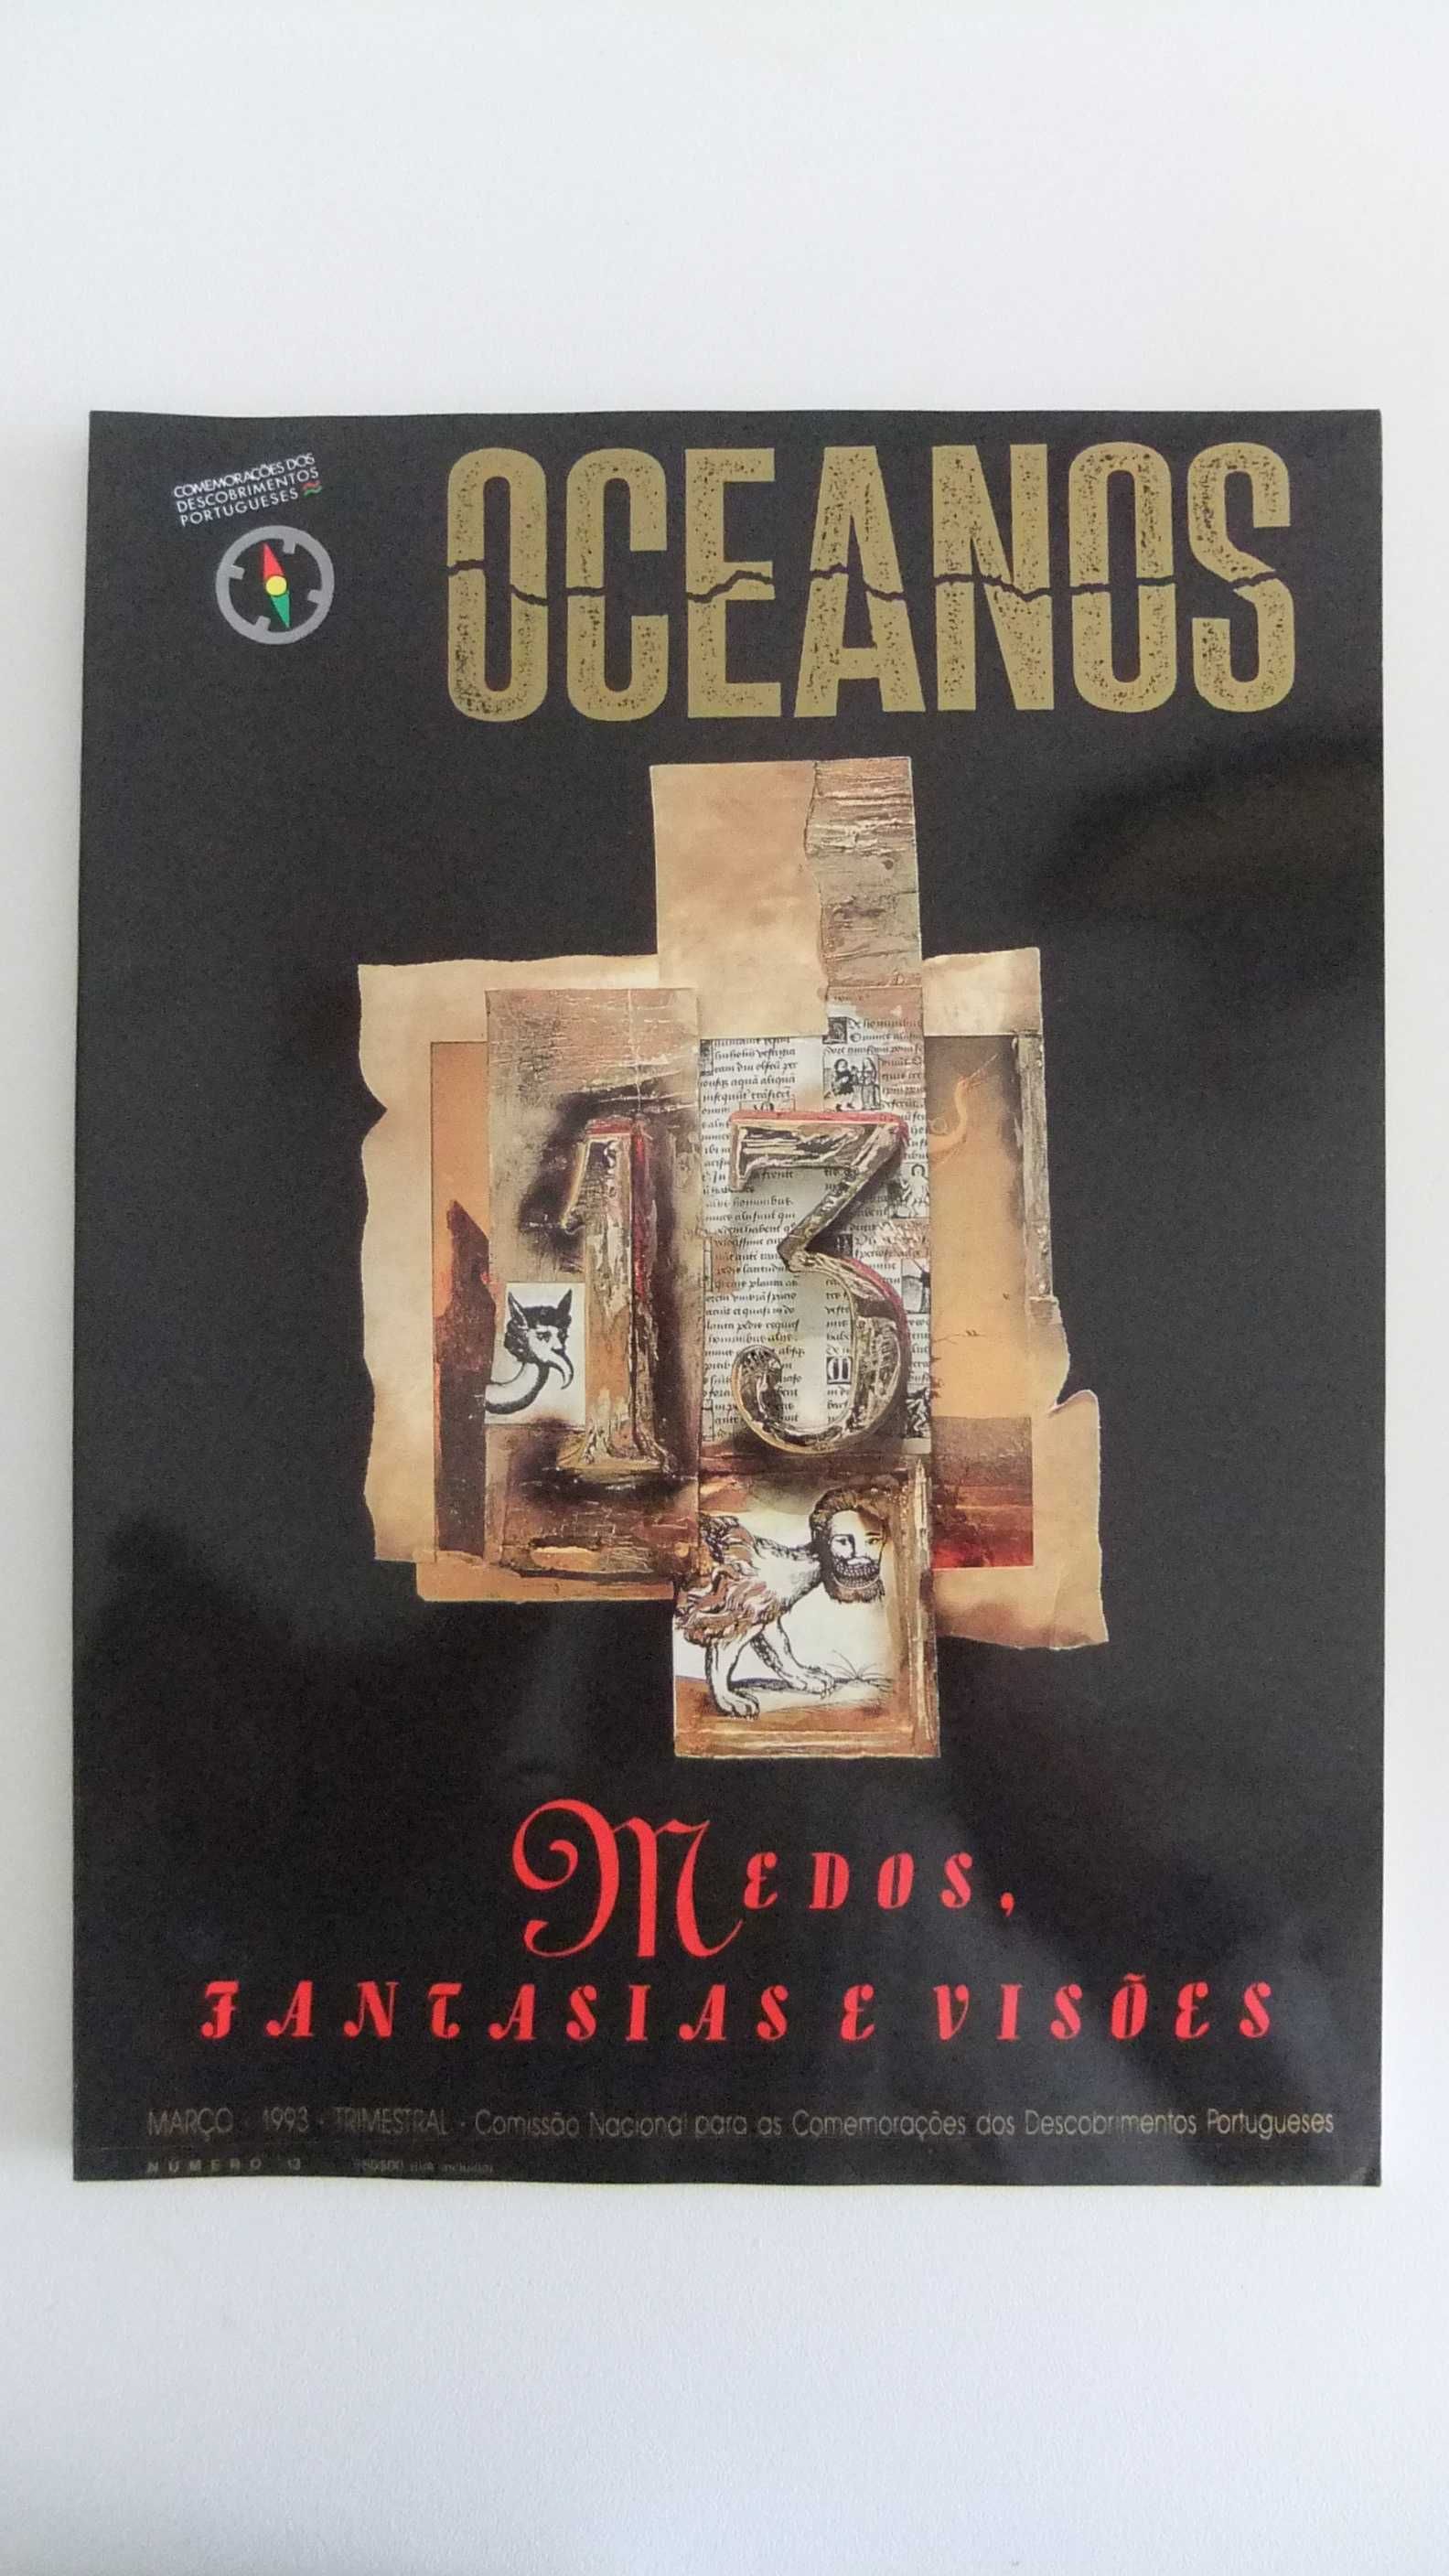 14 Revistas OCEANOS (nº 2 a 15) - Em estado NOVAS  (lote nº 2 a nº 8)